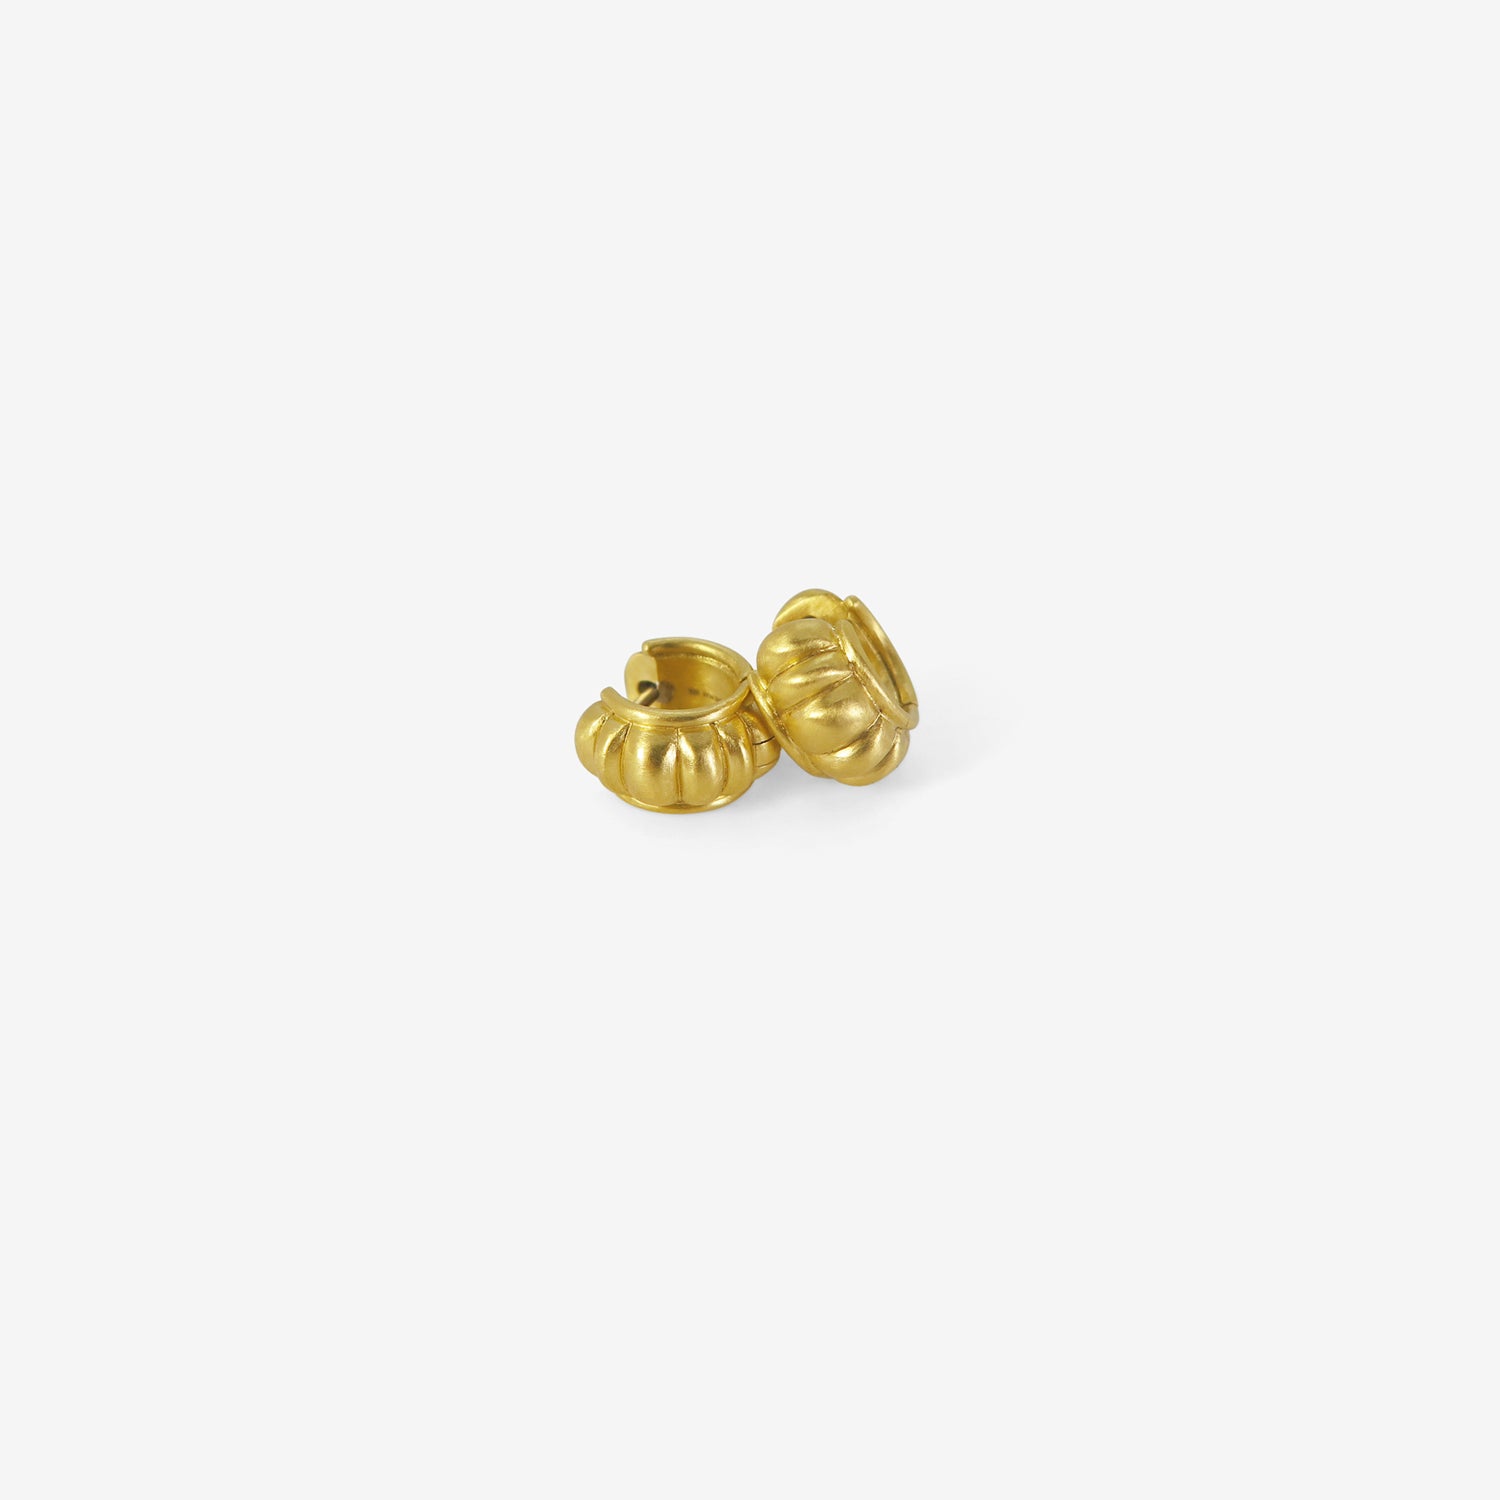 Gold Drop Earrings | Gold drop earrings, Gold earrings dangle, Gold jewelry  fashion